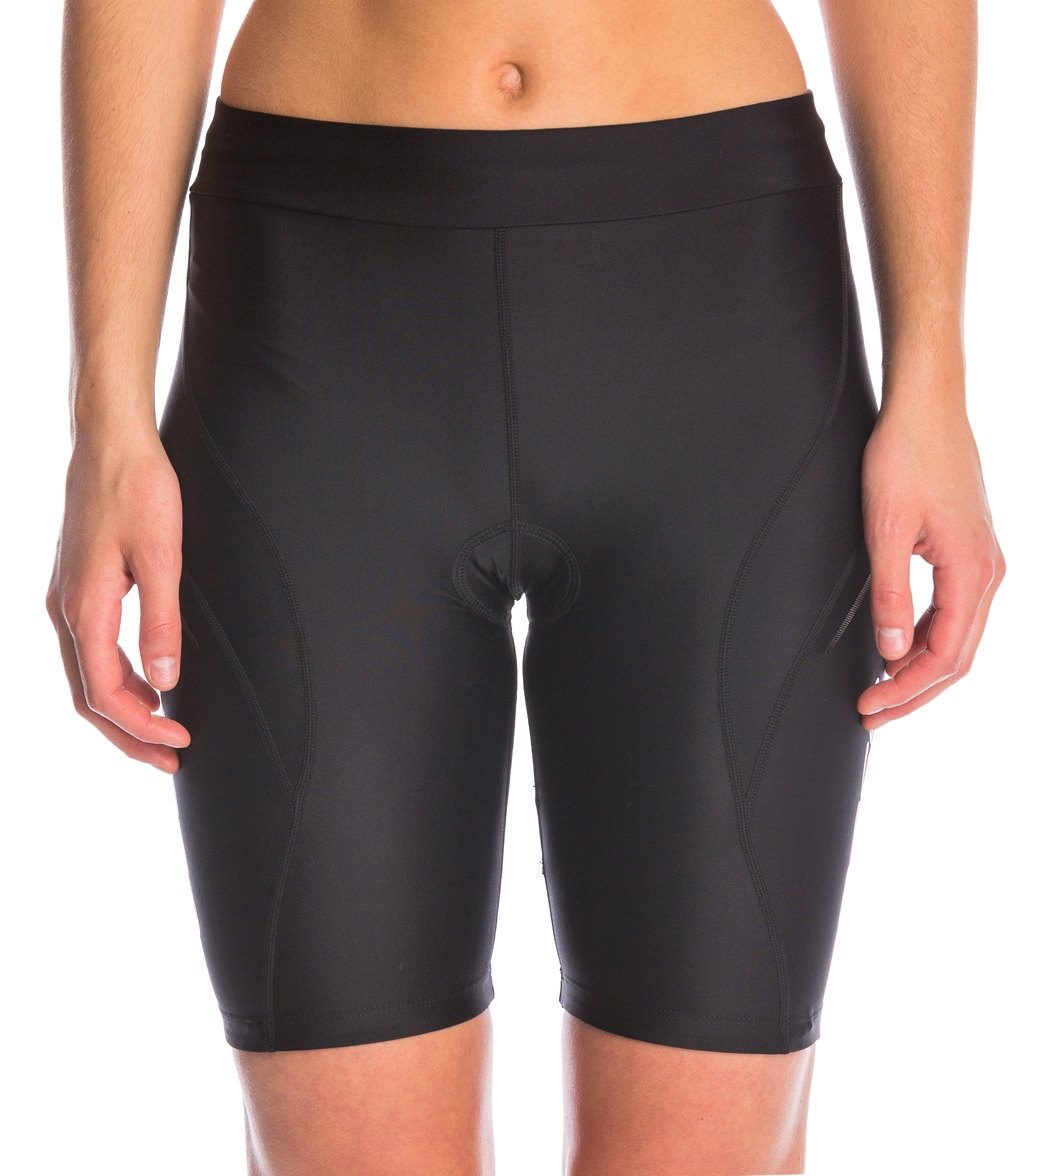 Orca Women's Core Tri Shorts - Black X-Small - Swimoutlet.com